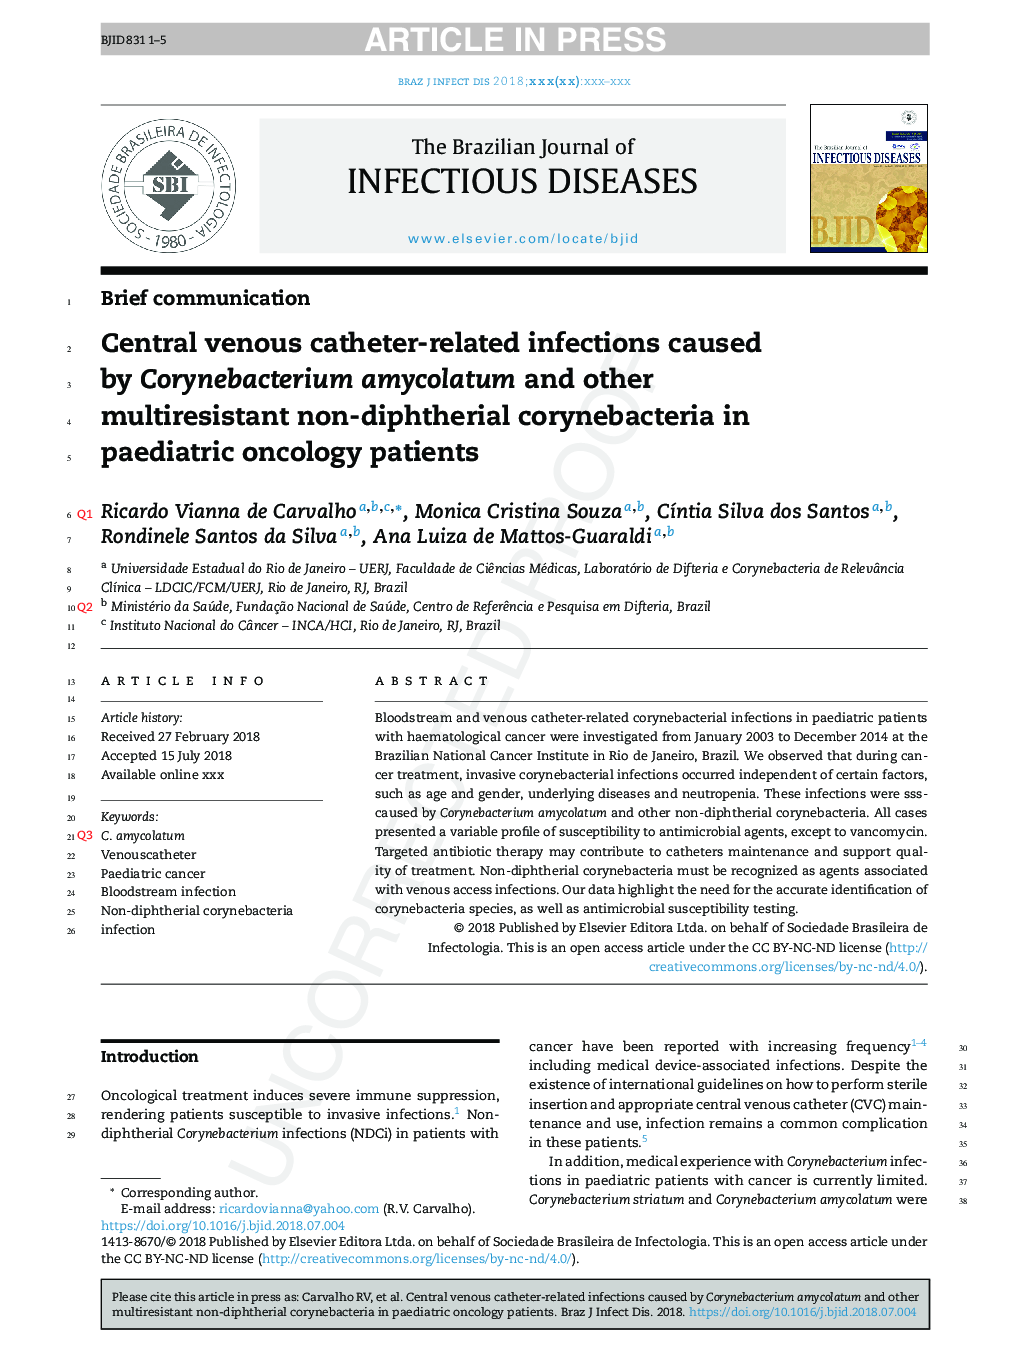 عفونت های مرتبط با کاتتر مرکزی وریدی ناشی از کورینباکتریوم آمیکولاتوم و چندین مقاوم در برابر کریبن اکریت های غیر دیفتریال در بیماران سرپایی کودکان